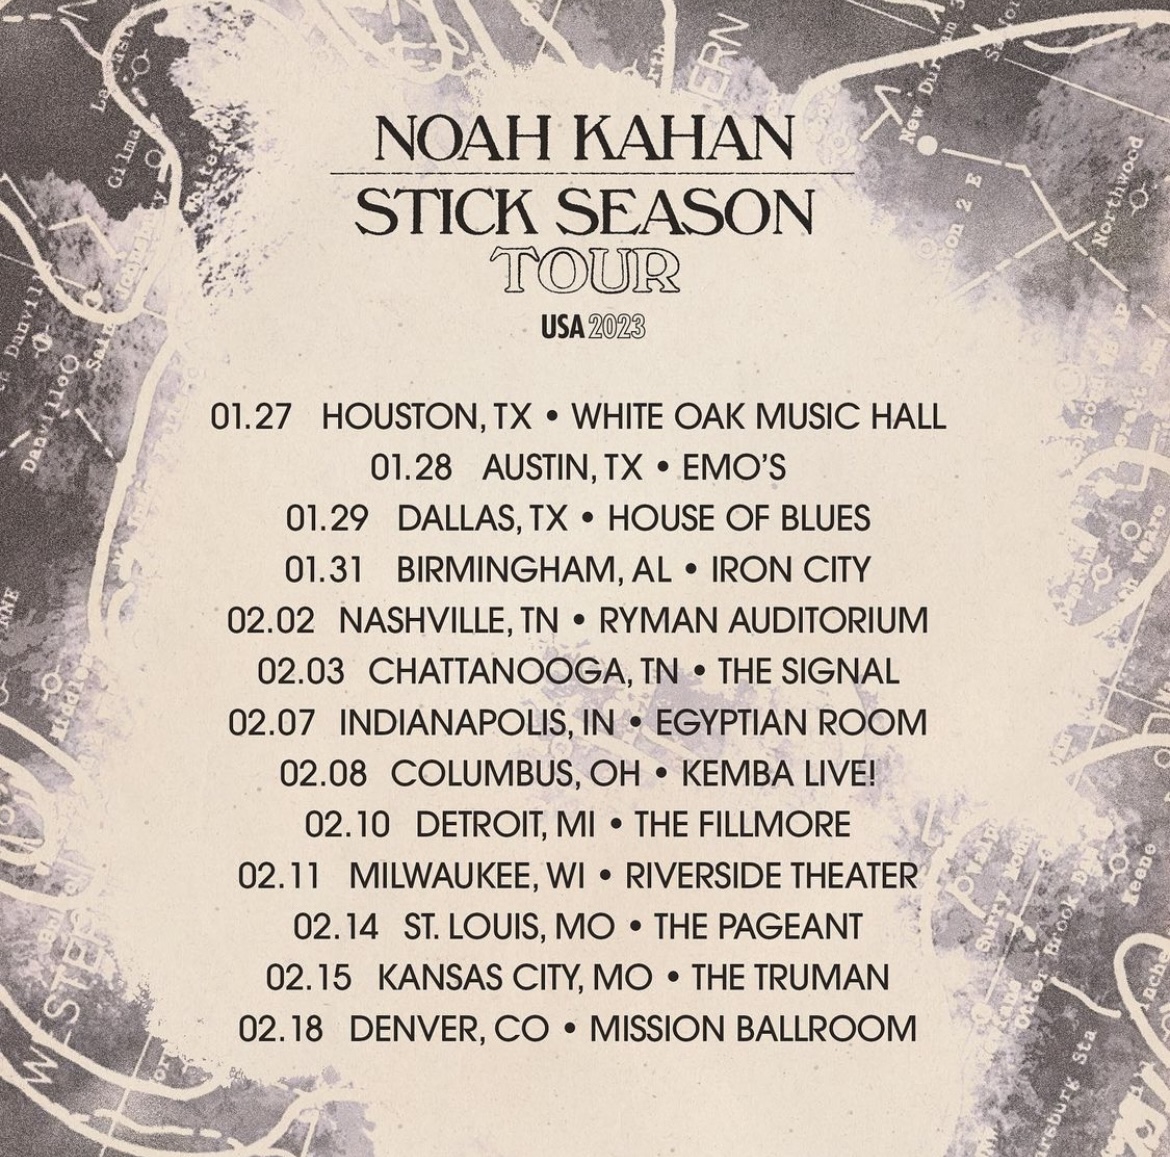 Noah Kahan Vinyl Record Stick Season